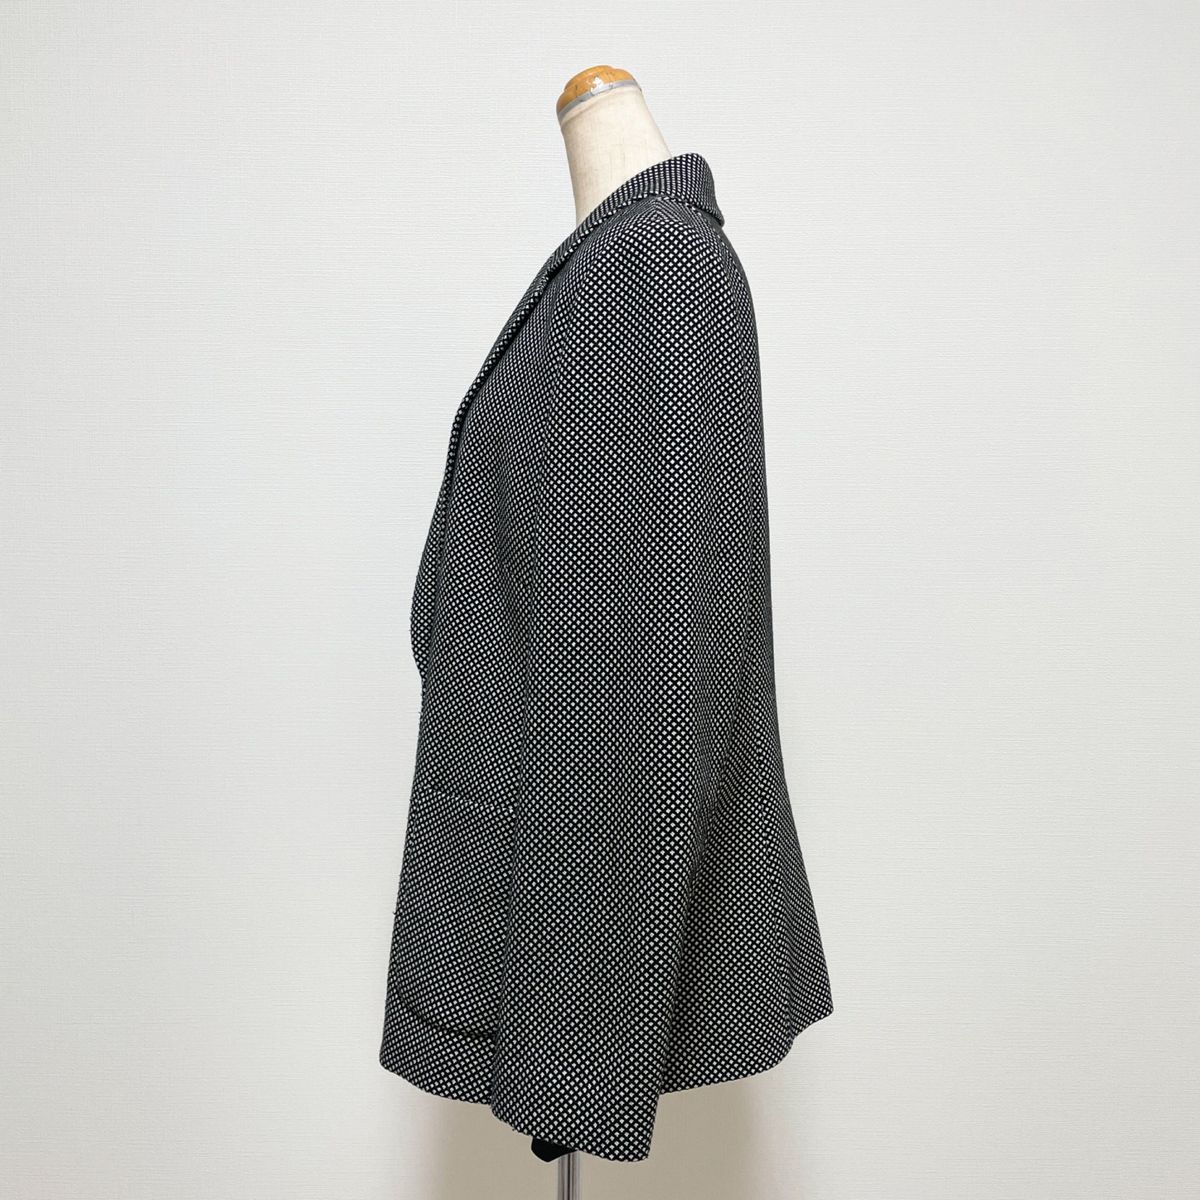 pierre cardin スカートスーツ ジャケット セットアップ ツイード 黒 大きいサイズ 日本製 お仕事 セレモニー